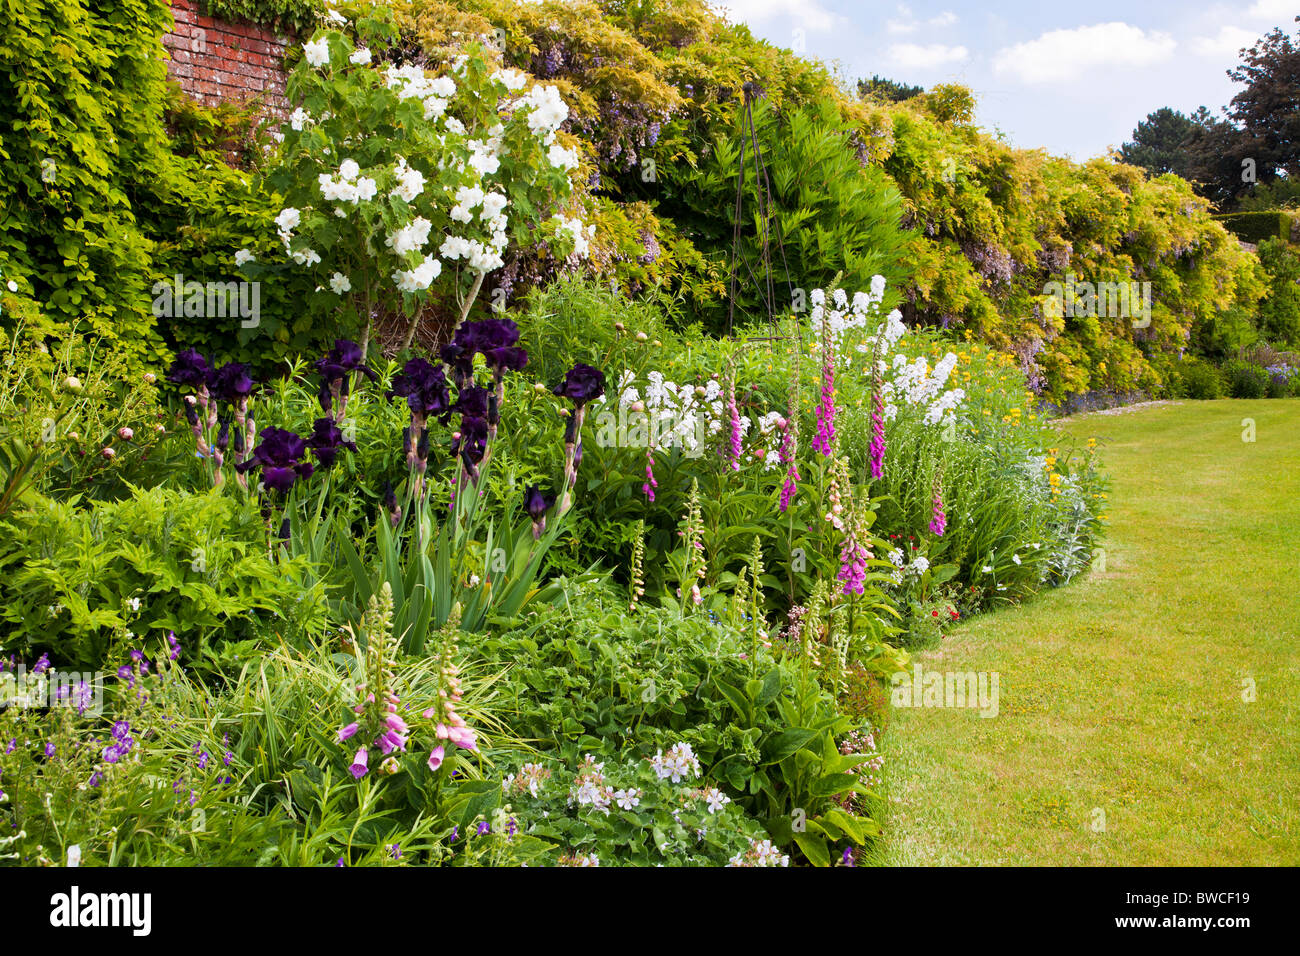 Une vivace herbacée ondulées frontière contre un mur au bord d'une pelouse dans un jardin d'été Anglais Banque D'Images